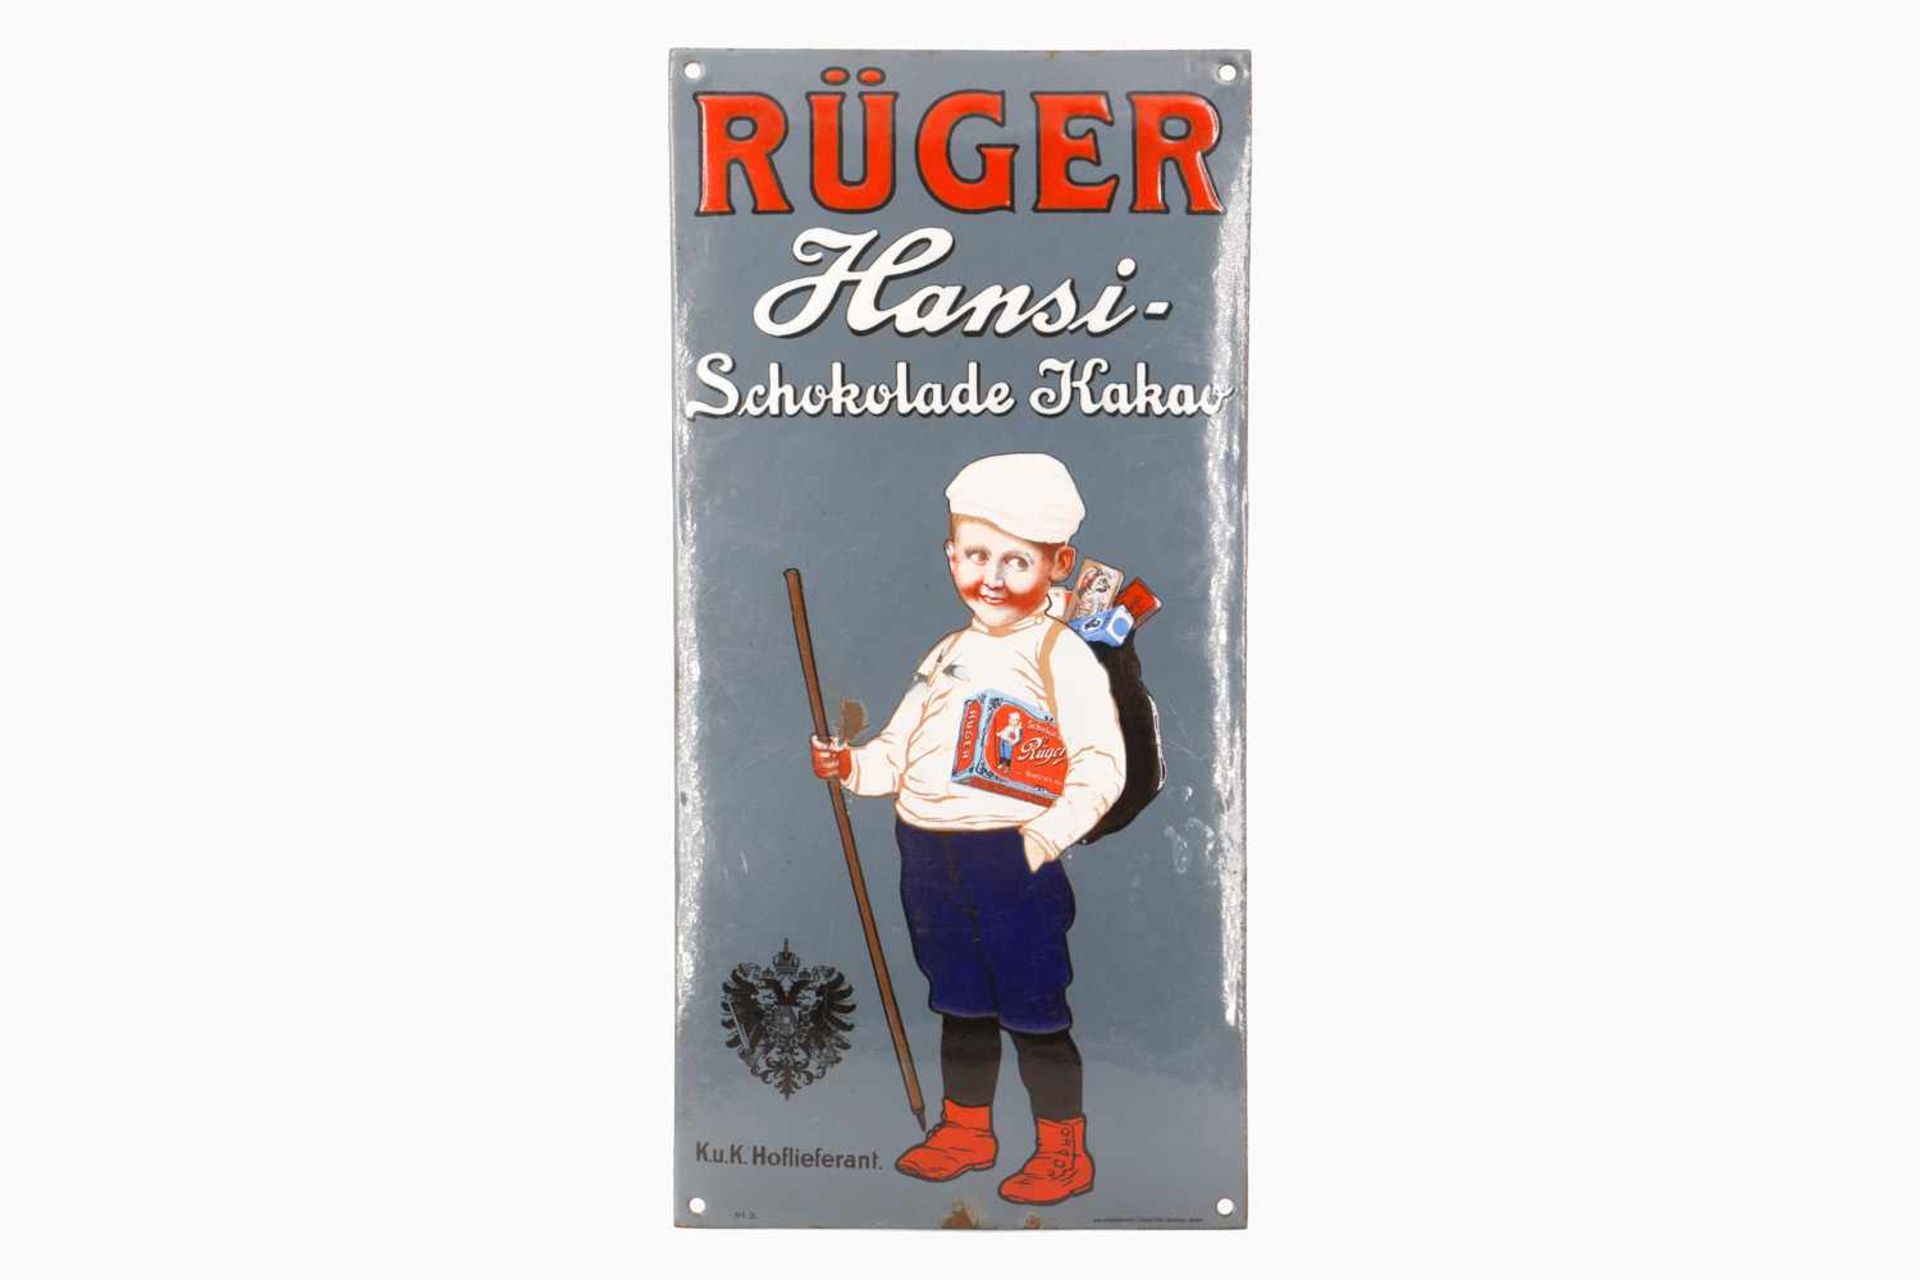 Werbe-Emailleschild "Rüger-Hansi - Schokolade Kakao", um 1900, gewölbt, bezeichnet Nr. 3, Ätz- &